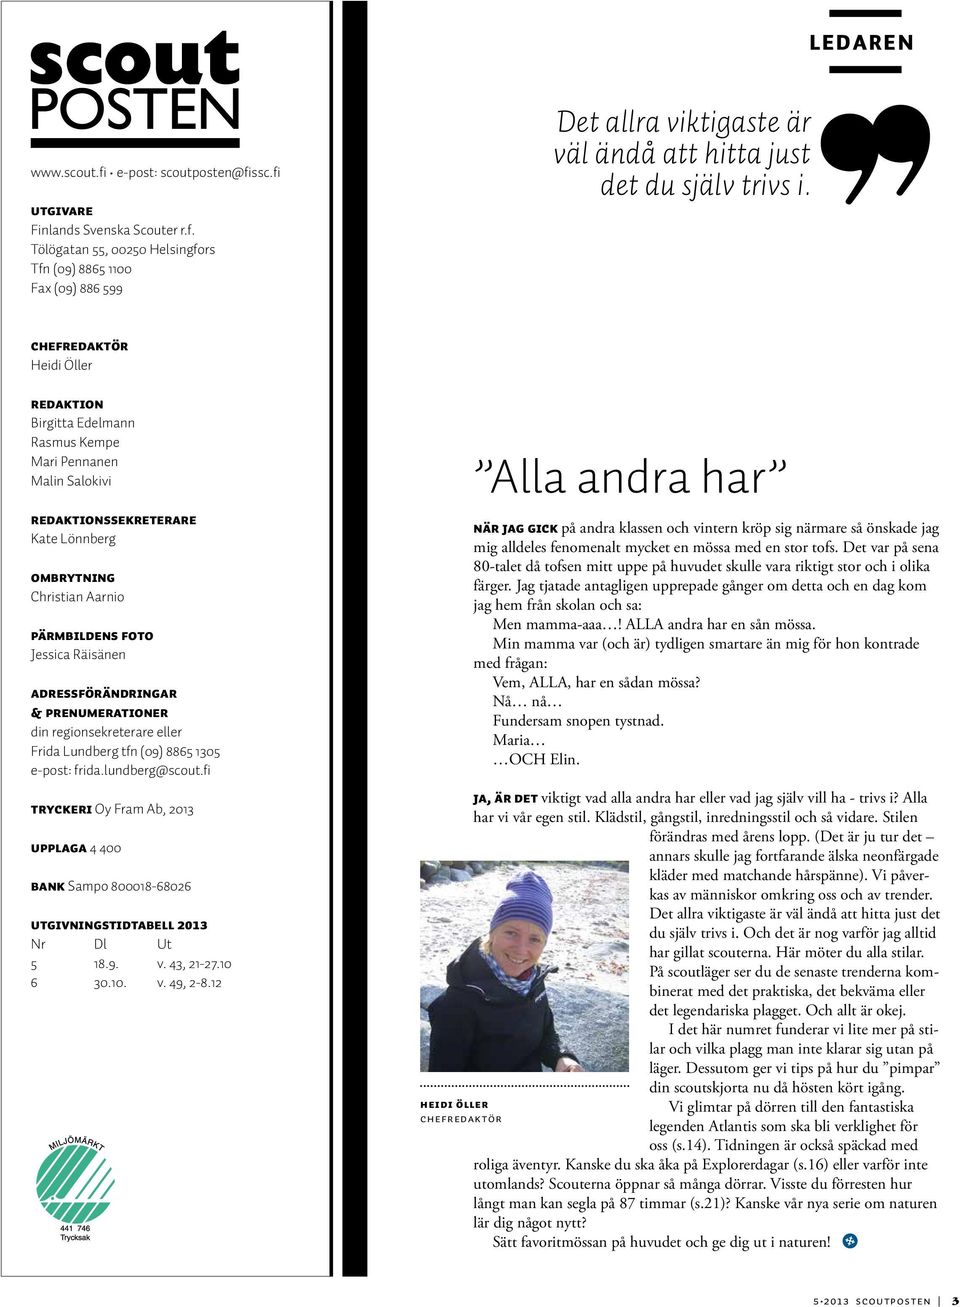 Adressförändringar & prenumerationer din regionsekreterare eller Frida Lundberg tfn (09) 8865 1305 e-post: frida.lundberg@scout.